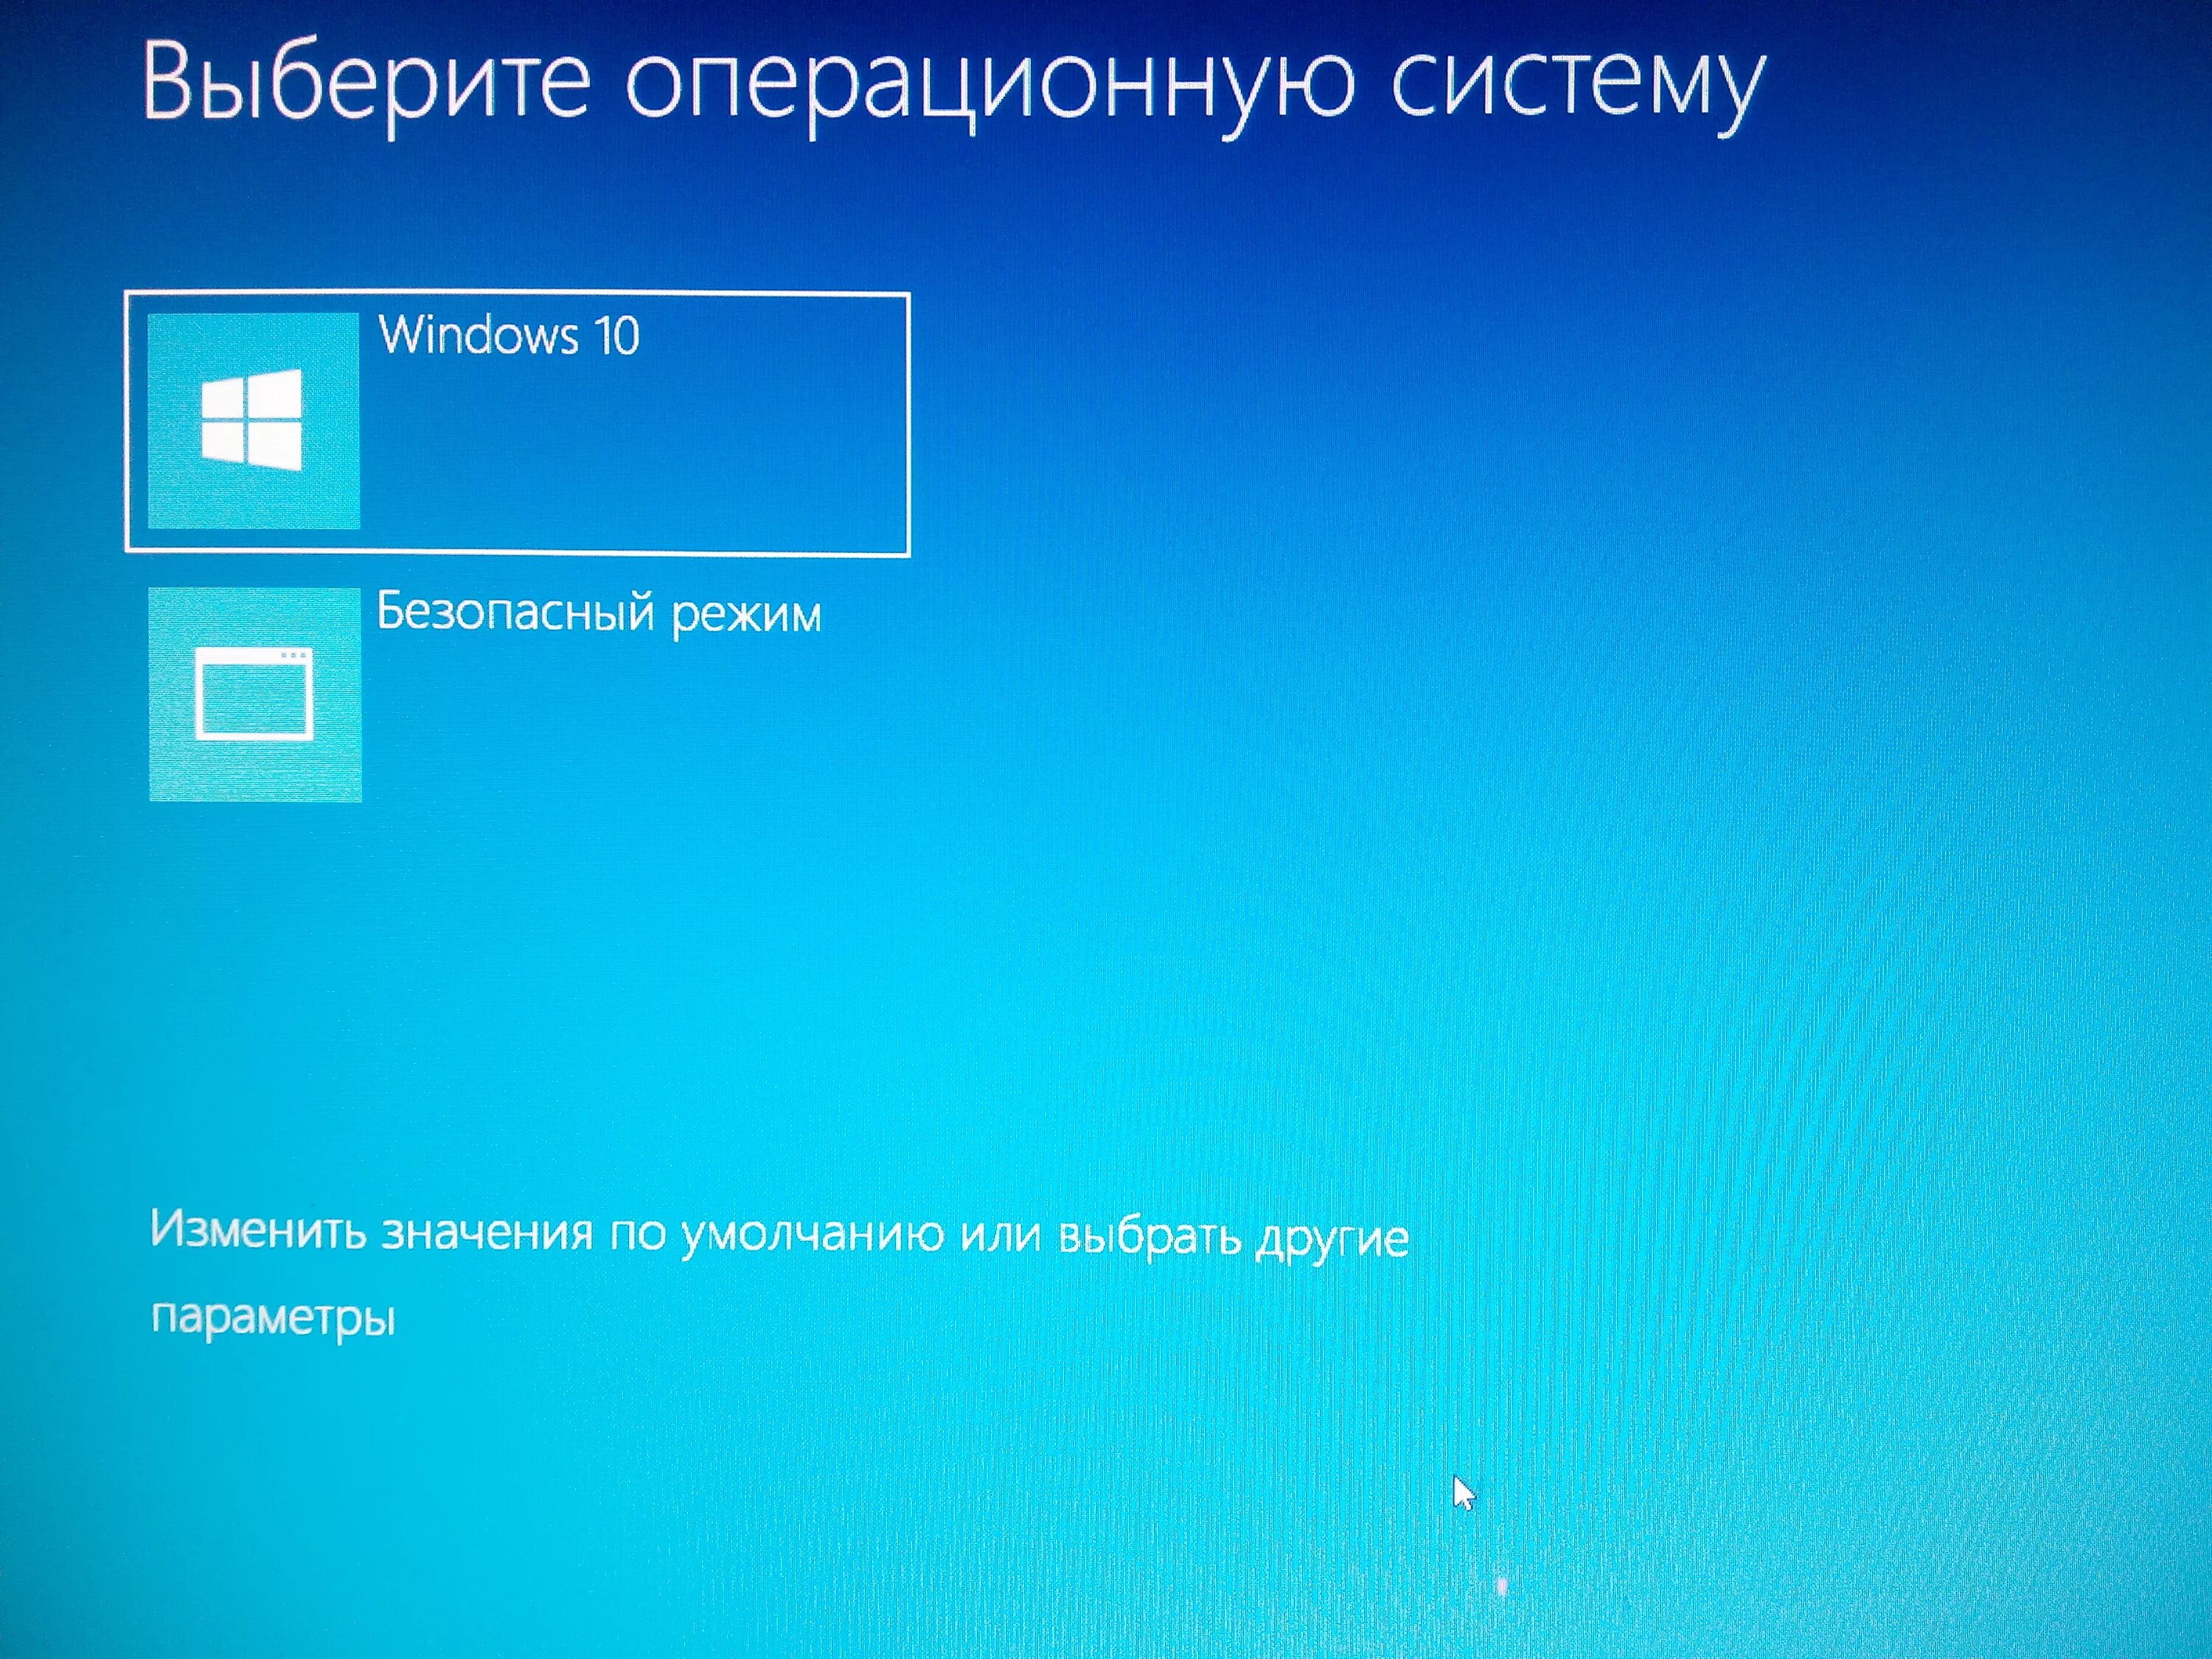 Загрузка в безопасном режиме. Загрузка операционной системы Windows 10. Меню загрузки Windows 10. Компьютер в безопасном режиме. Load windows 10